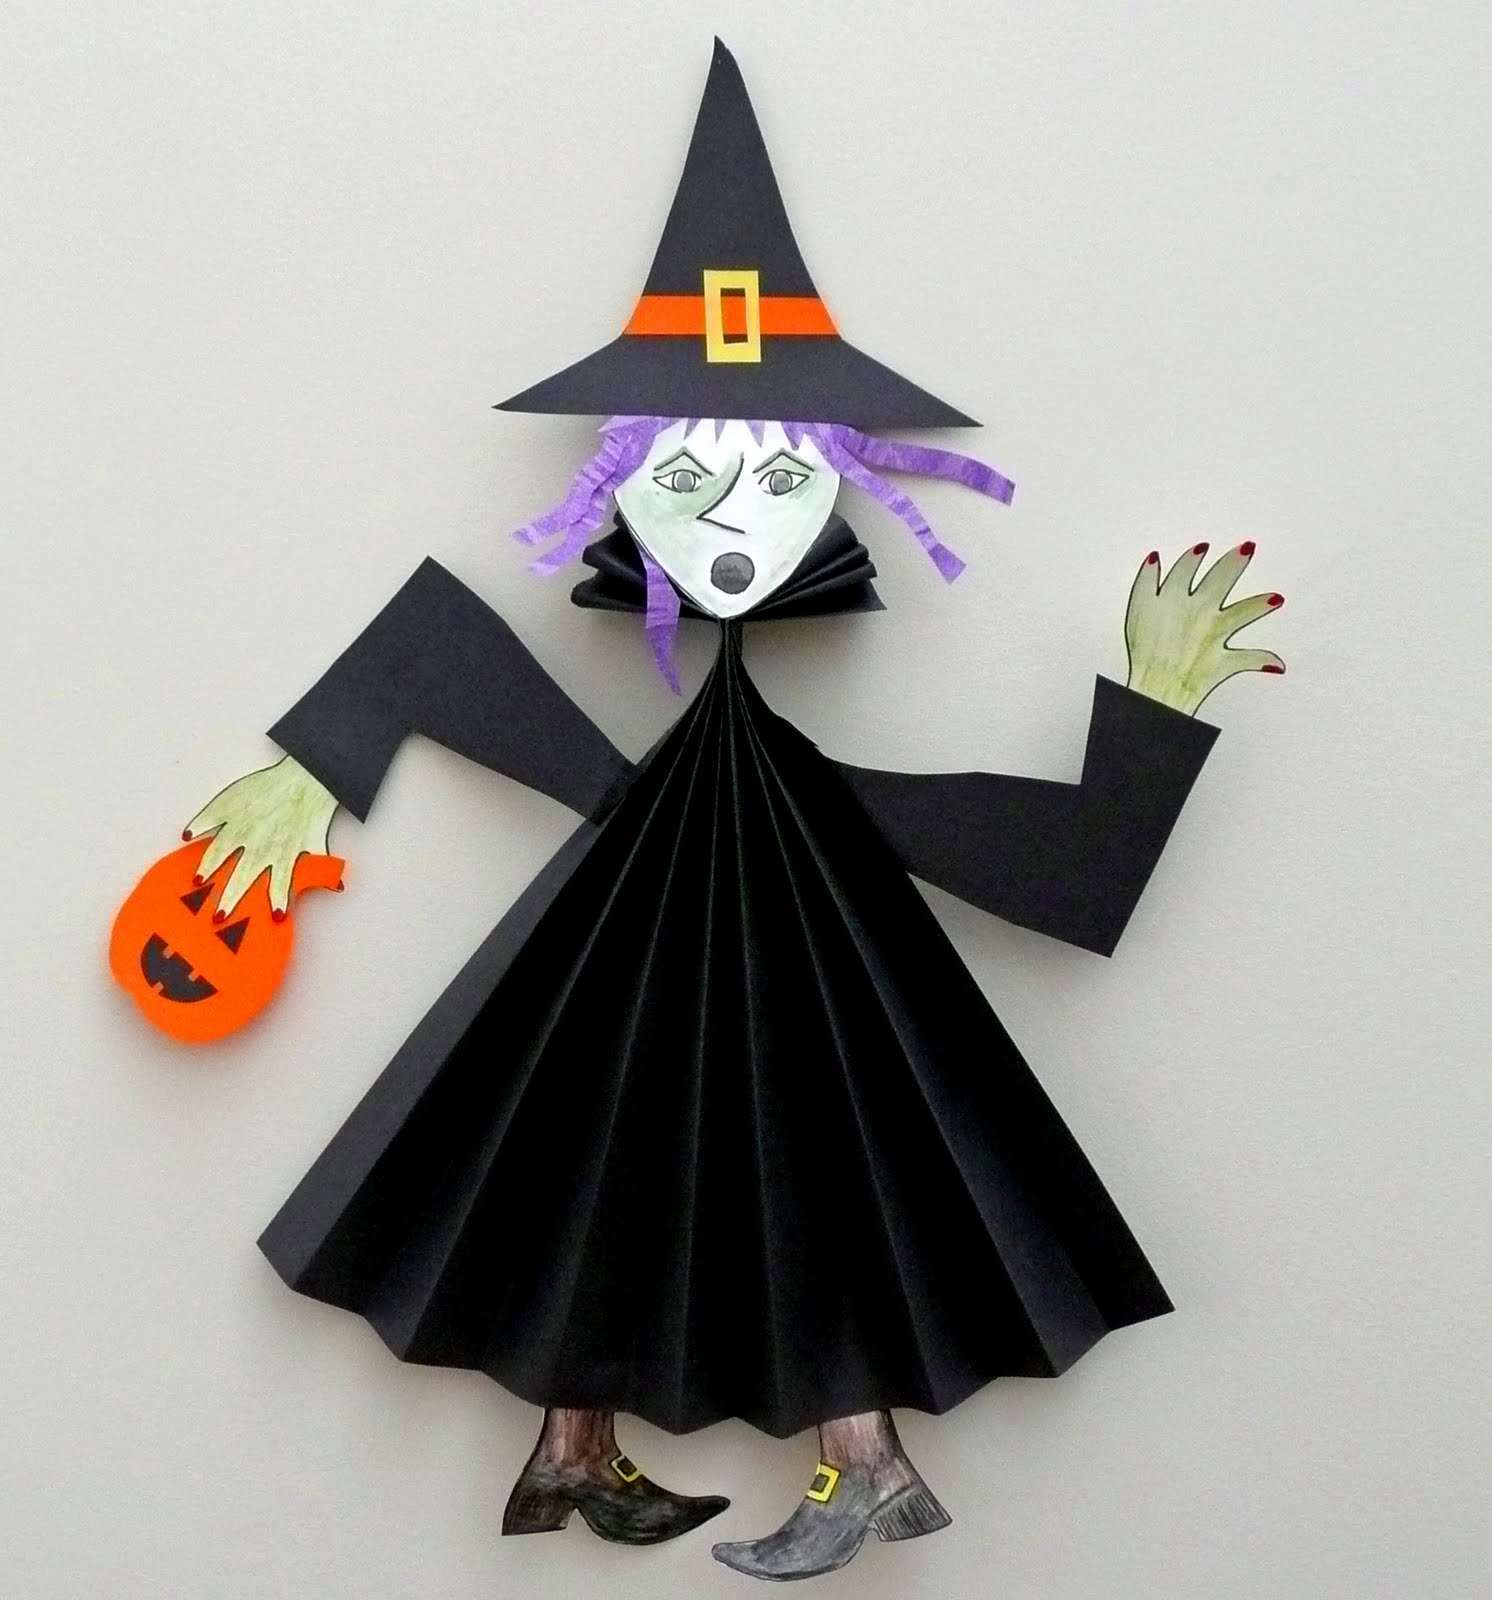 Поделки на хэллоуин своими руками из бумаги: поделки тыквы, гирлянды, маски, костюмы – распечатать и вырезать шаблоны на hellowen